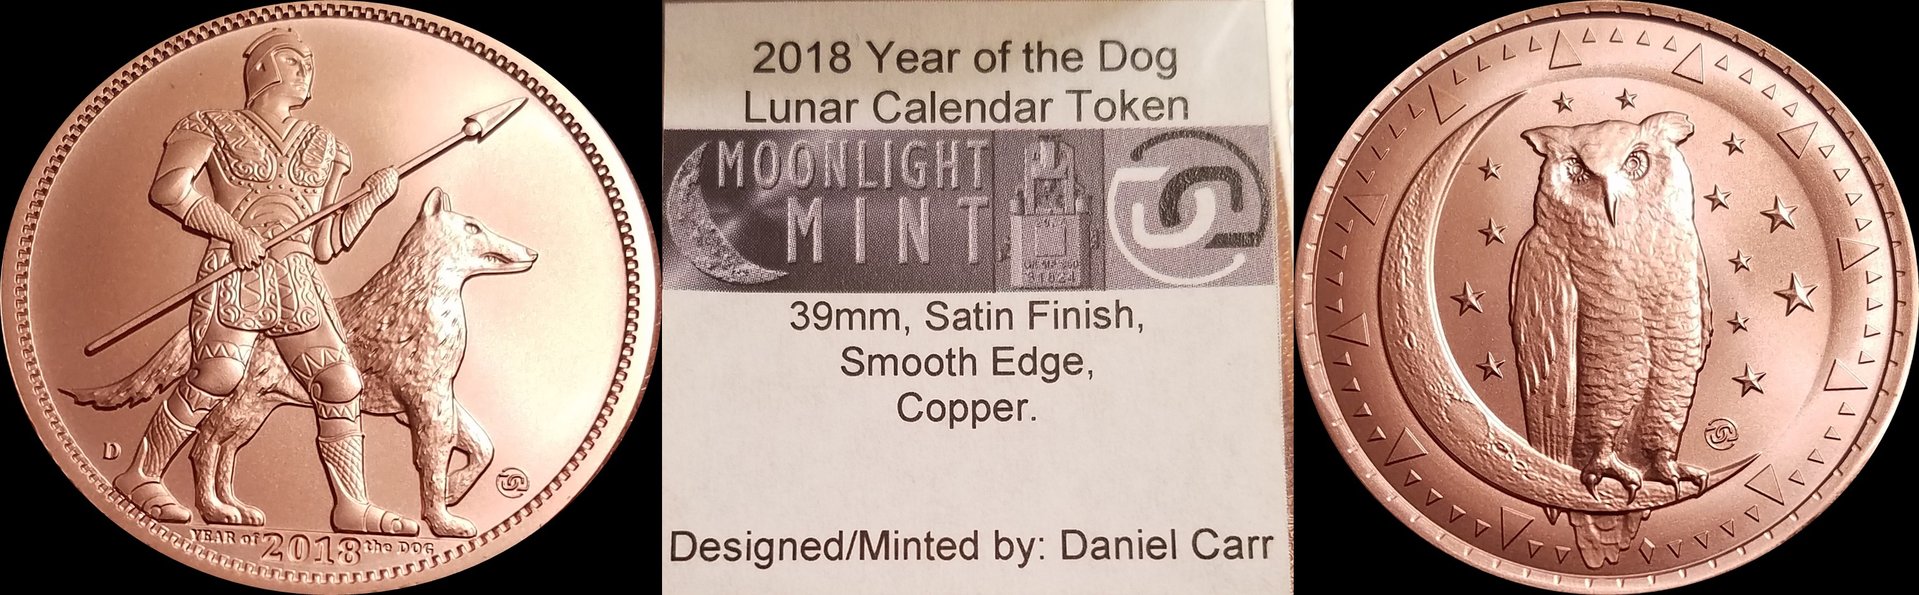 2018 Year of the dog 1 cu-horz.jpg